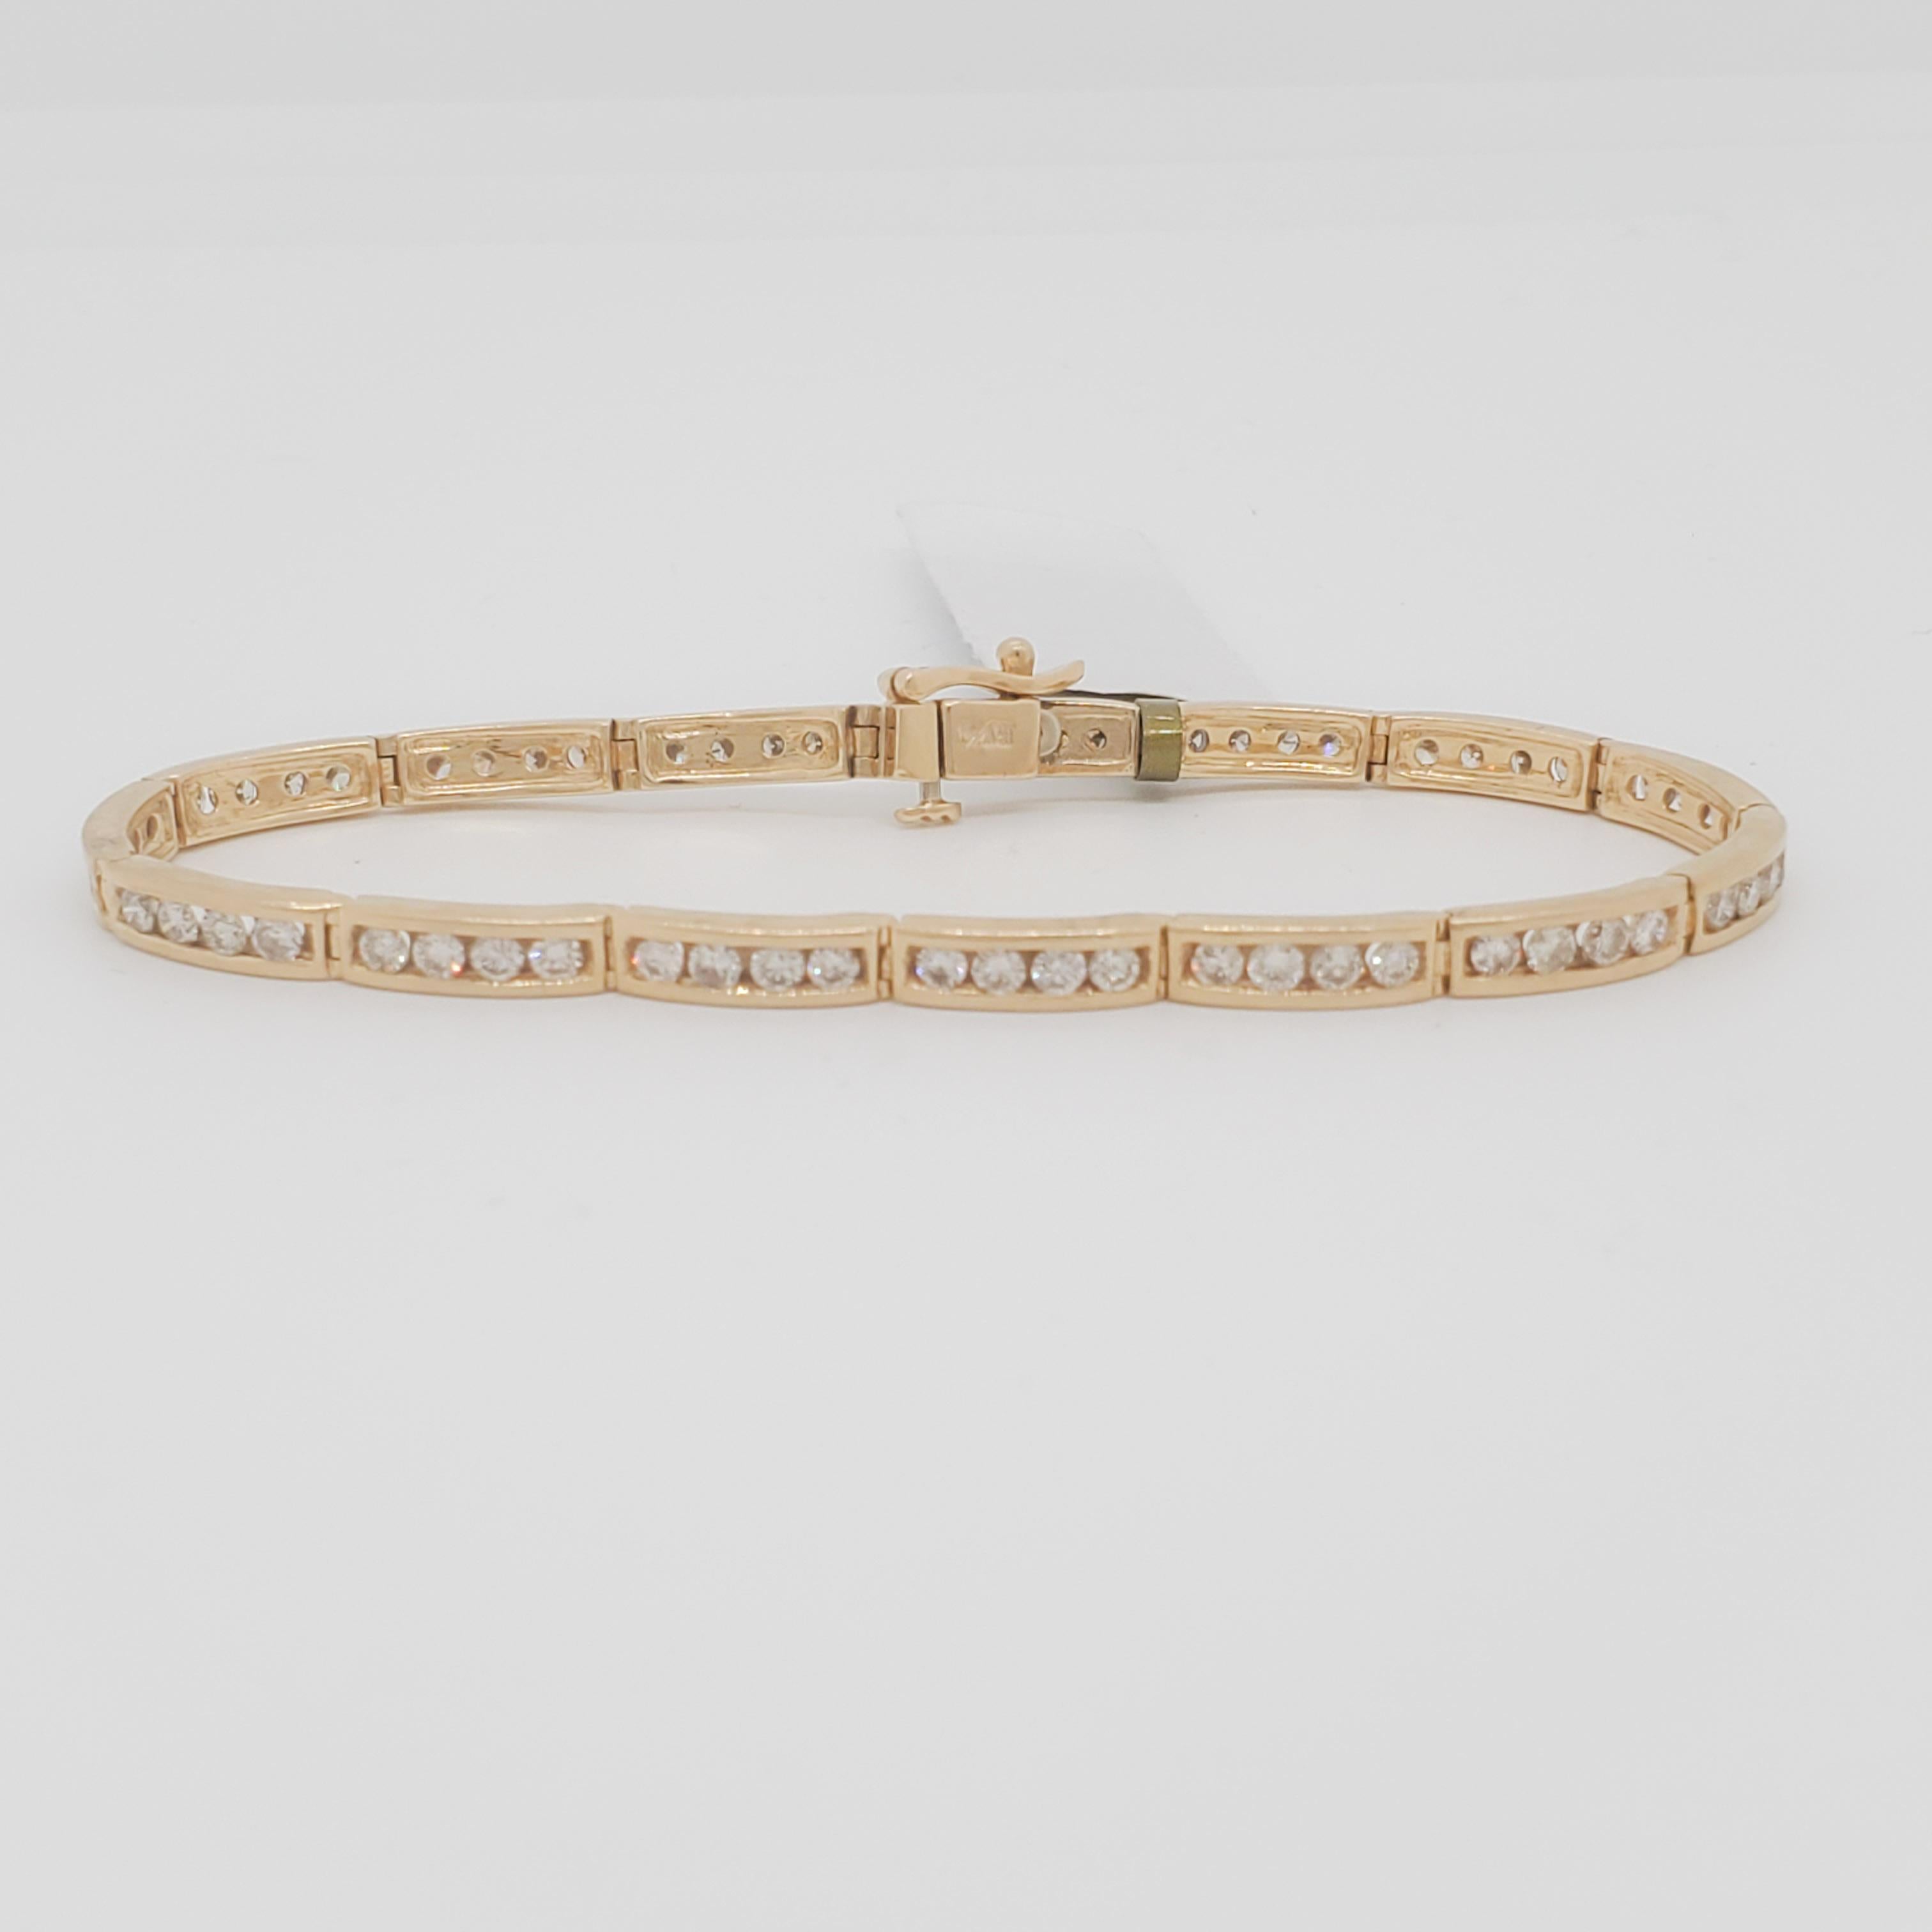 Magnifique bracelet droit avec 4,00 carats de diamants blancs ronds de bonne qualité.  Fabriquée à la main en or jaune 14 carats.  La longueur est de 18,4 cm.